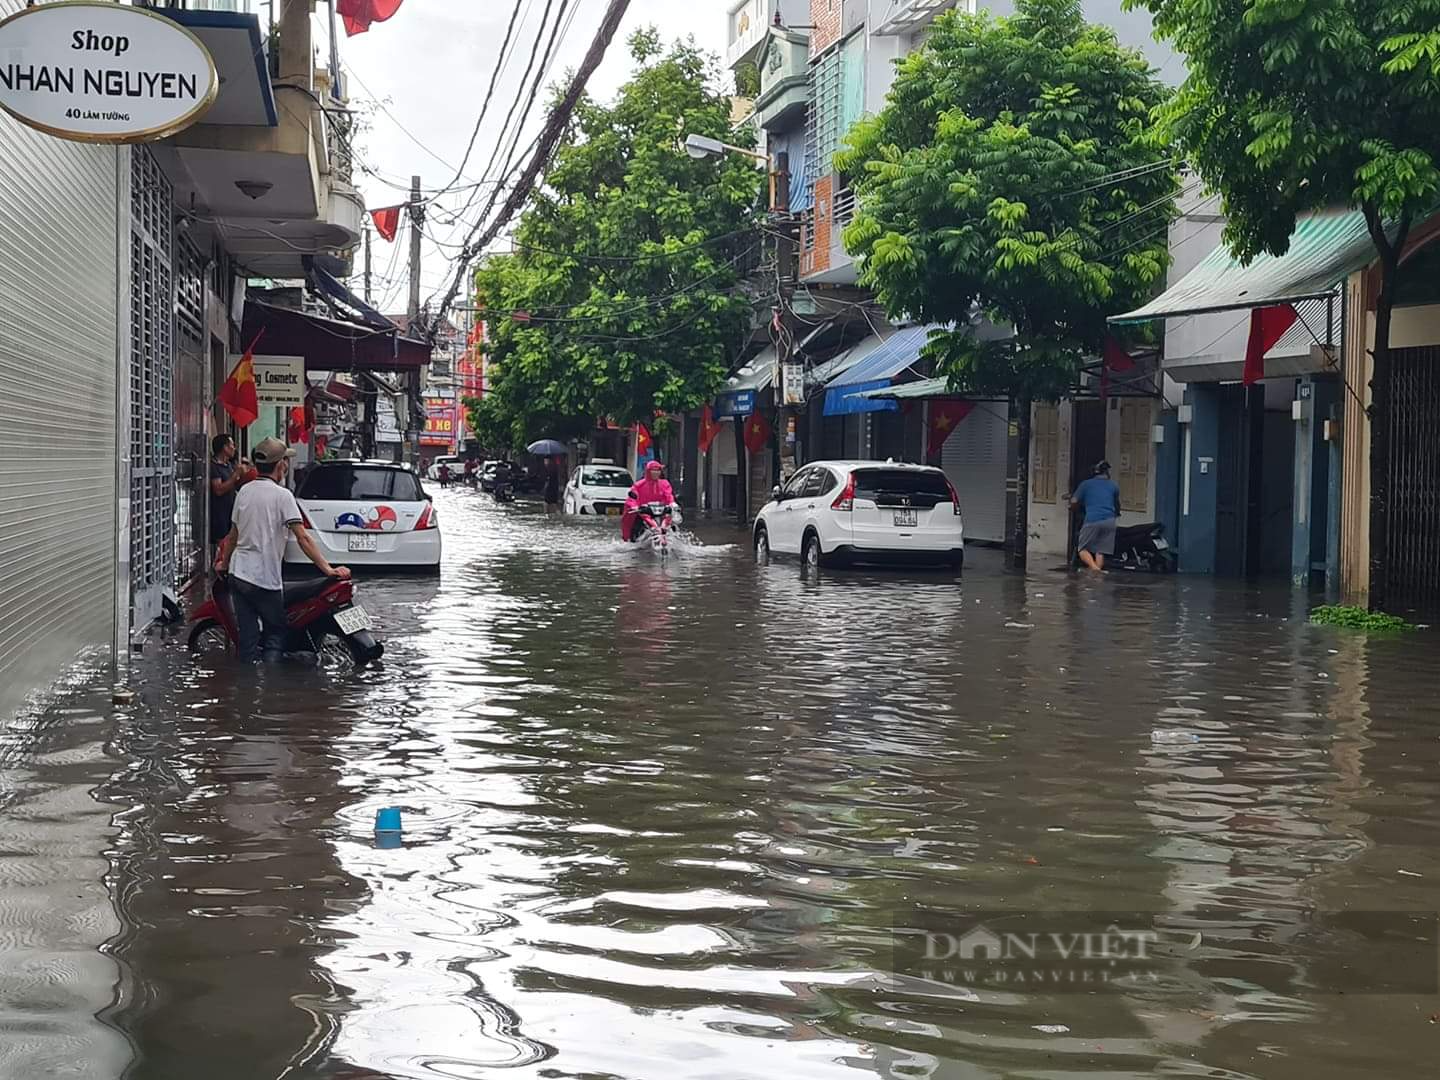 Nội thành Hải Phòng biến thành sông sau trận mưa lớn - Ảnh 2.